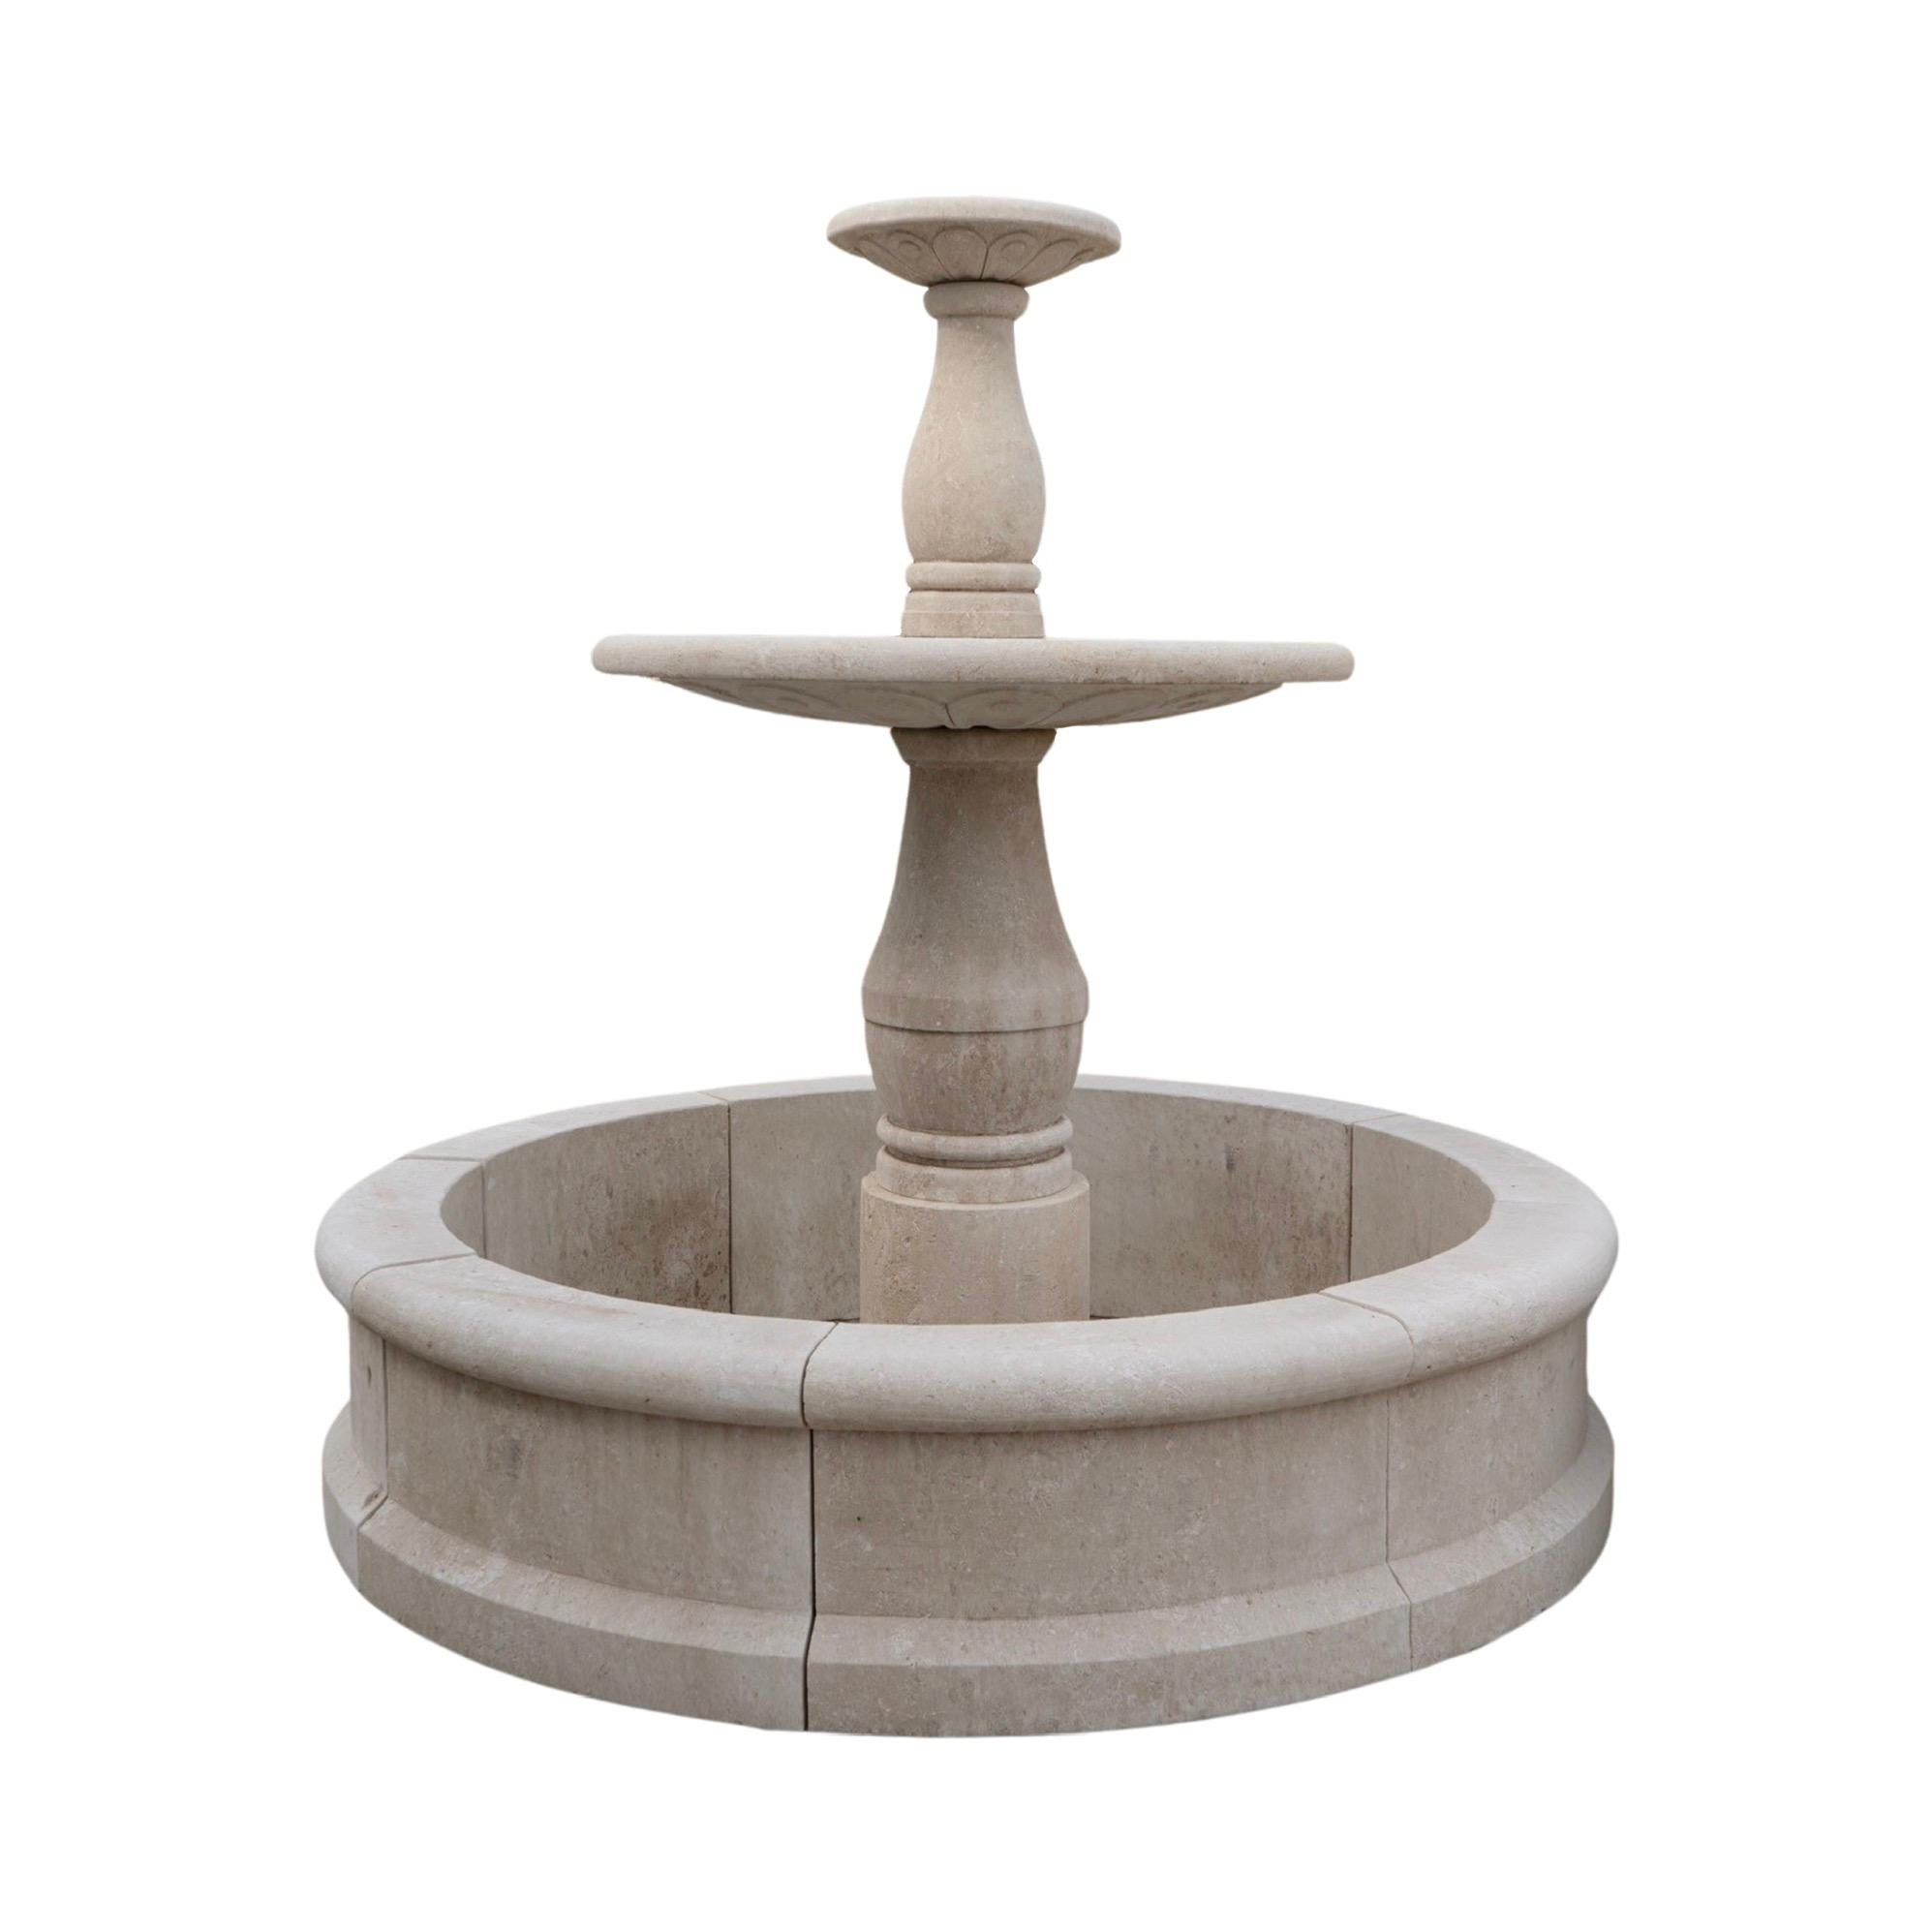 Cette fontaine centrale en pierre calcaire française ajoute une touche d'élégance française à tout espace extérieur. Le design à deux niveaux présente des sculptures complexes, et le matériau calcaire durable garantit une beauté durable. Le style